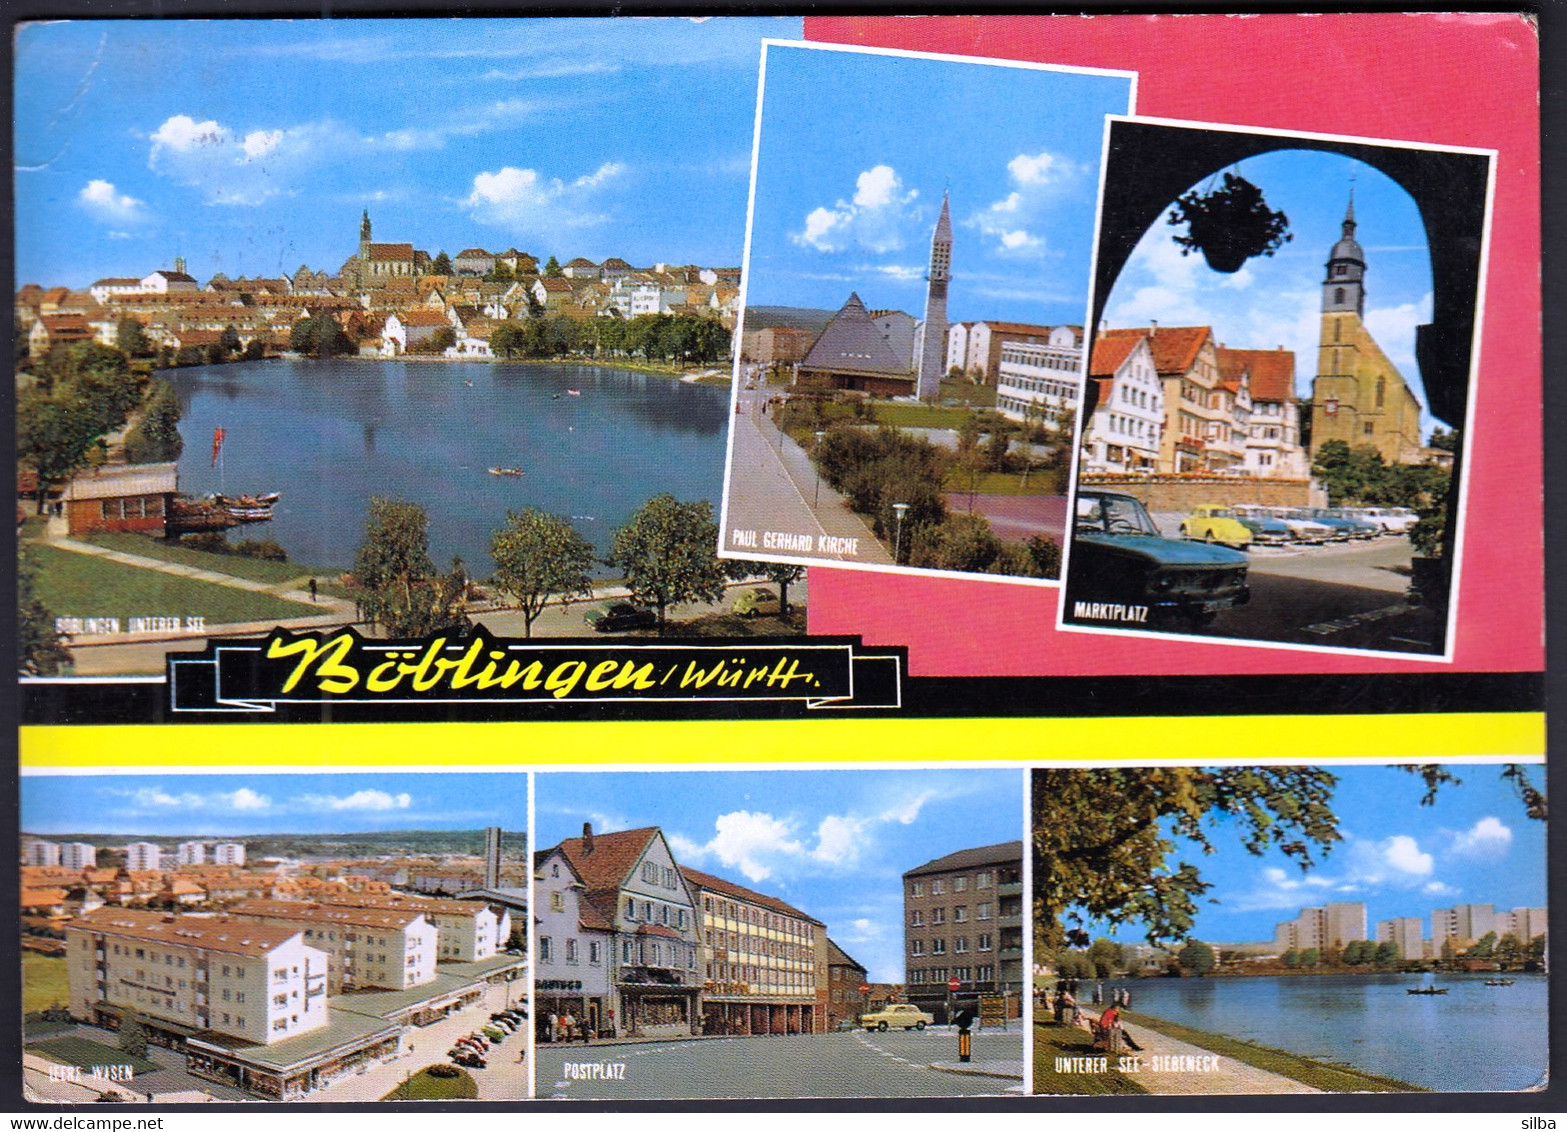 Germany Boeblingen 1974 / Böblingen / Württ. / Multi View, Lake, Church, Square, Car VW Beetle, Rowing Boats - Boeblingen